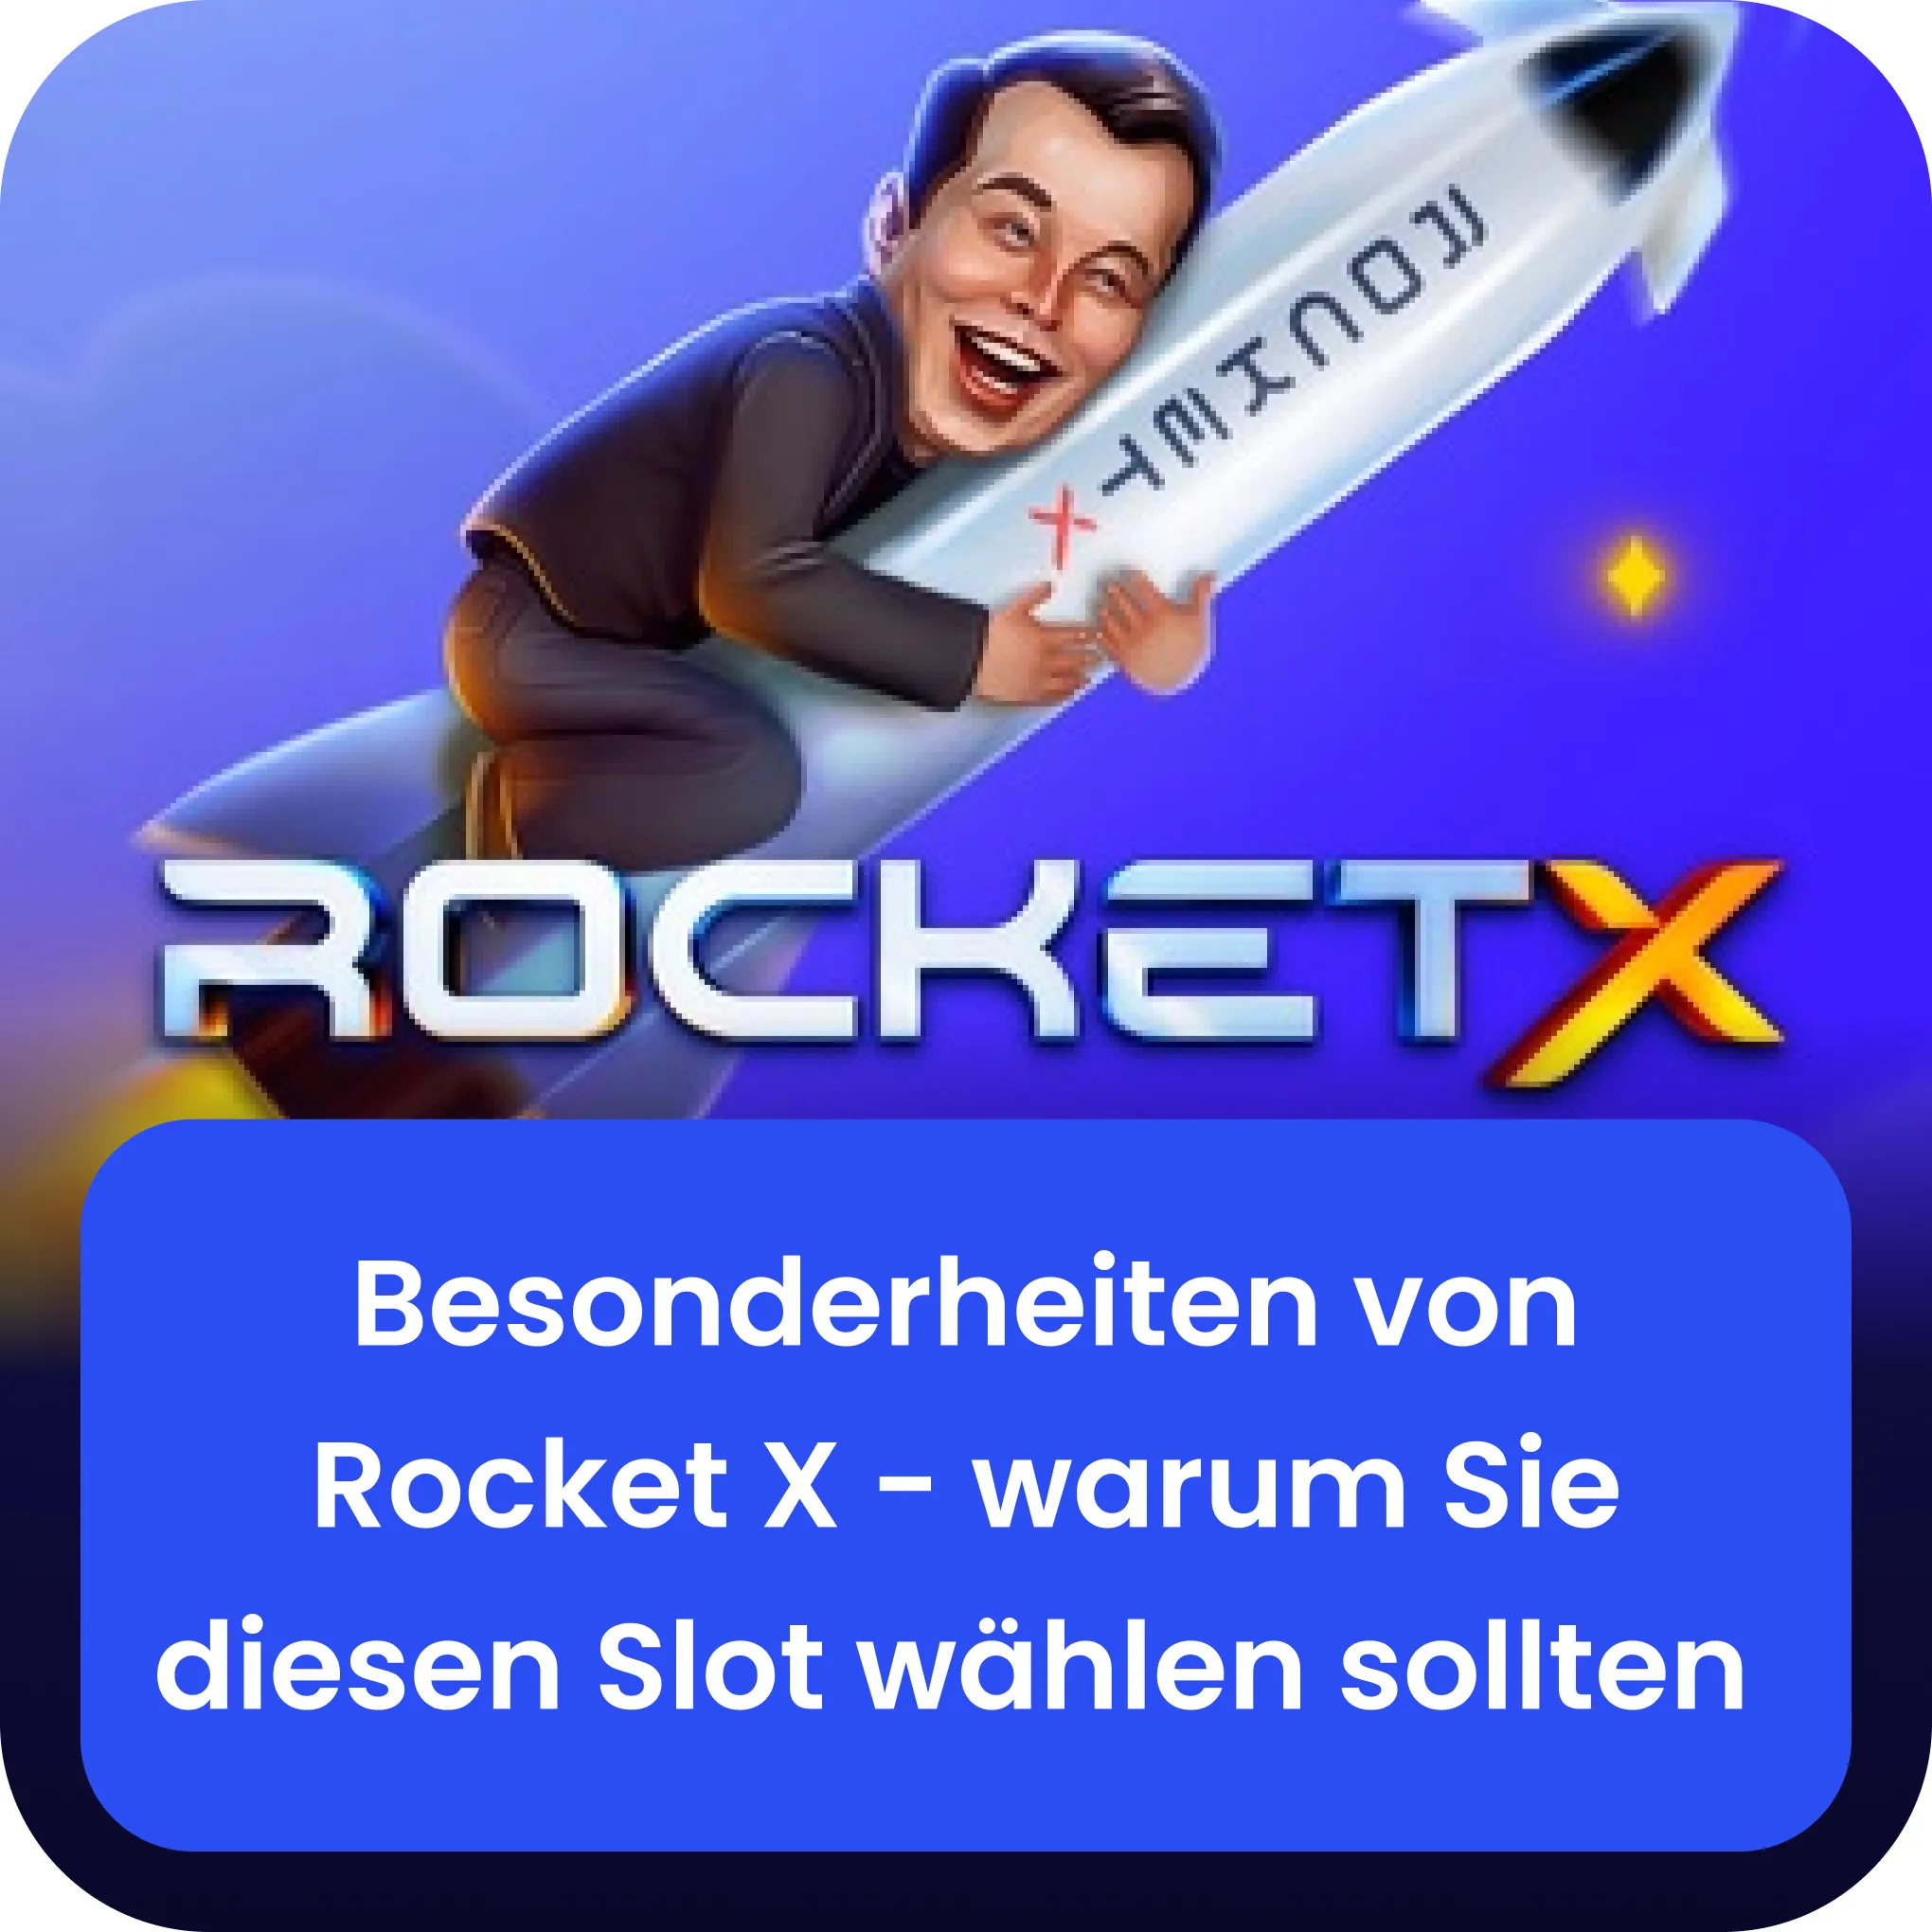 besonderheiten von rocket x